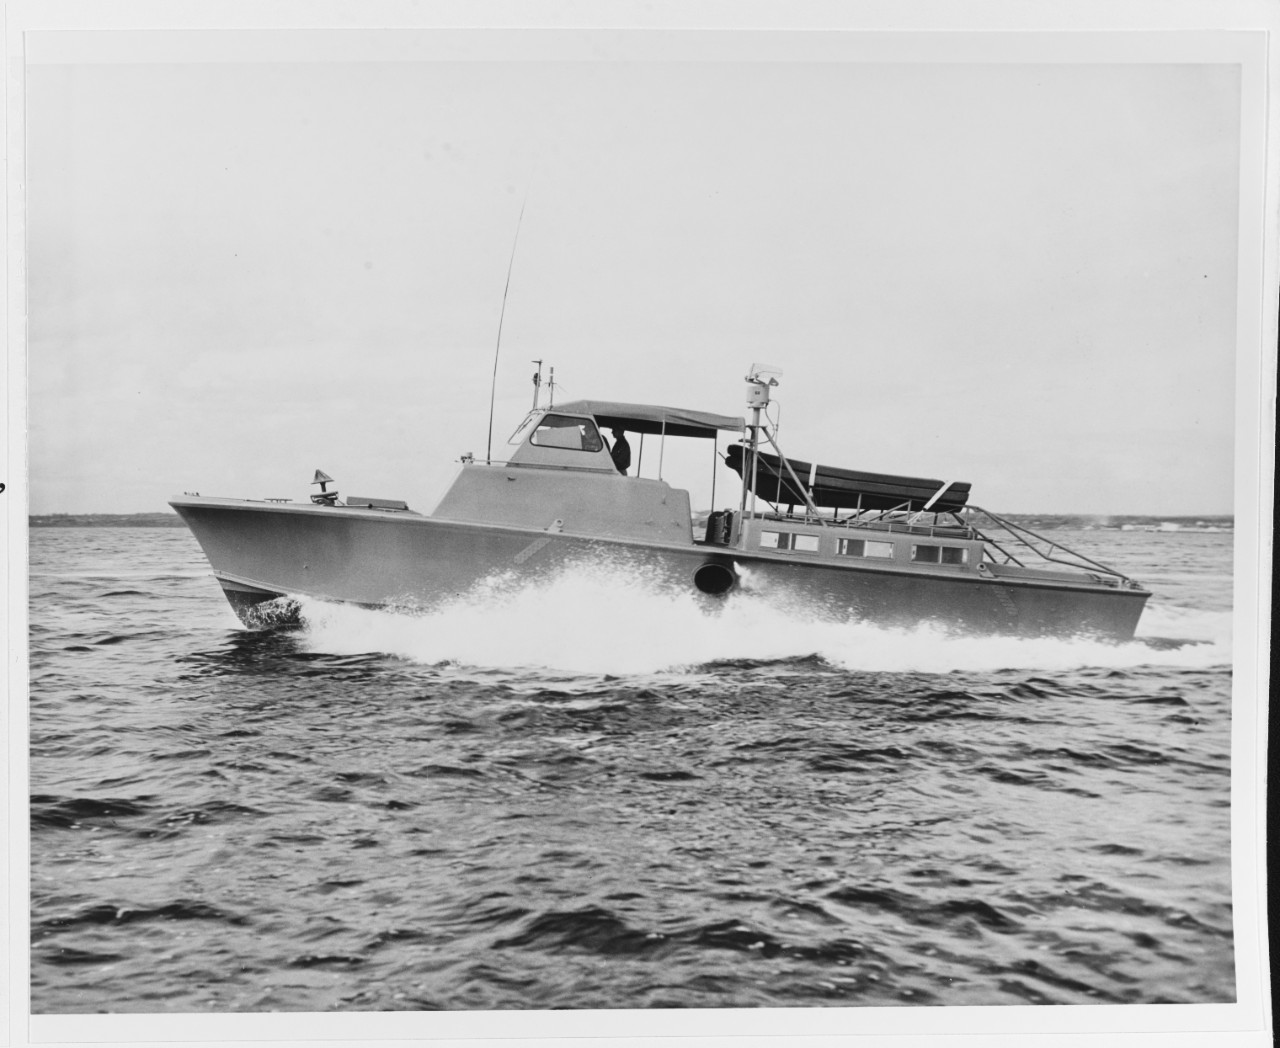 52-foot landing craft swimmer reconnaissance (LCSR)